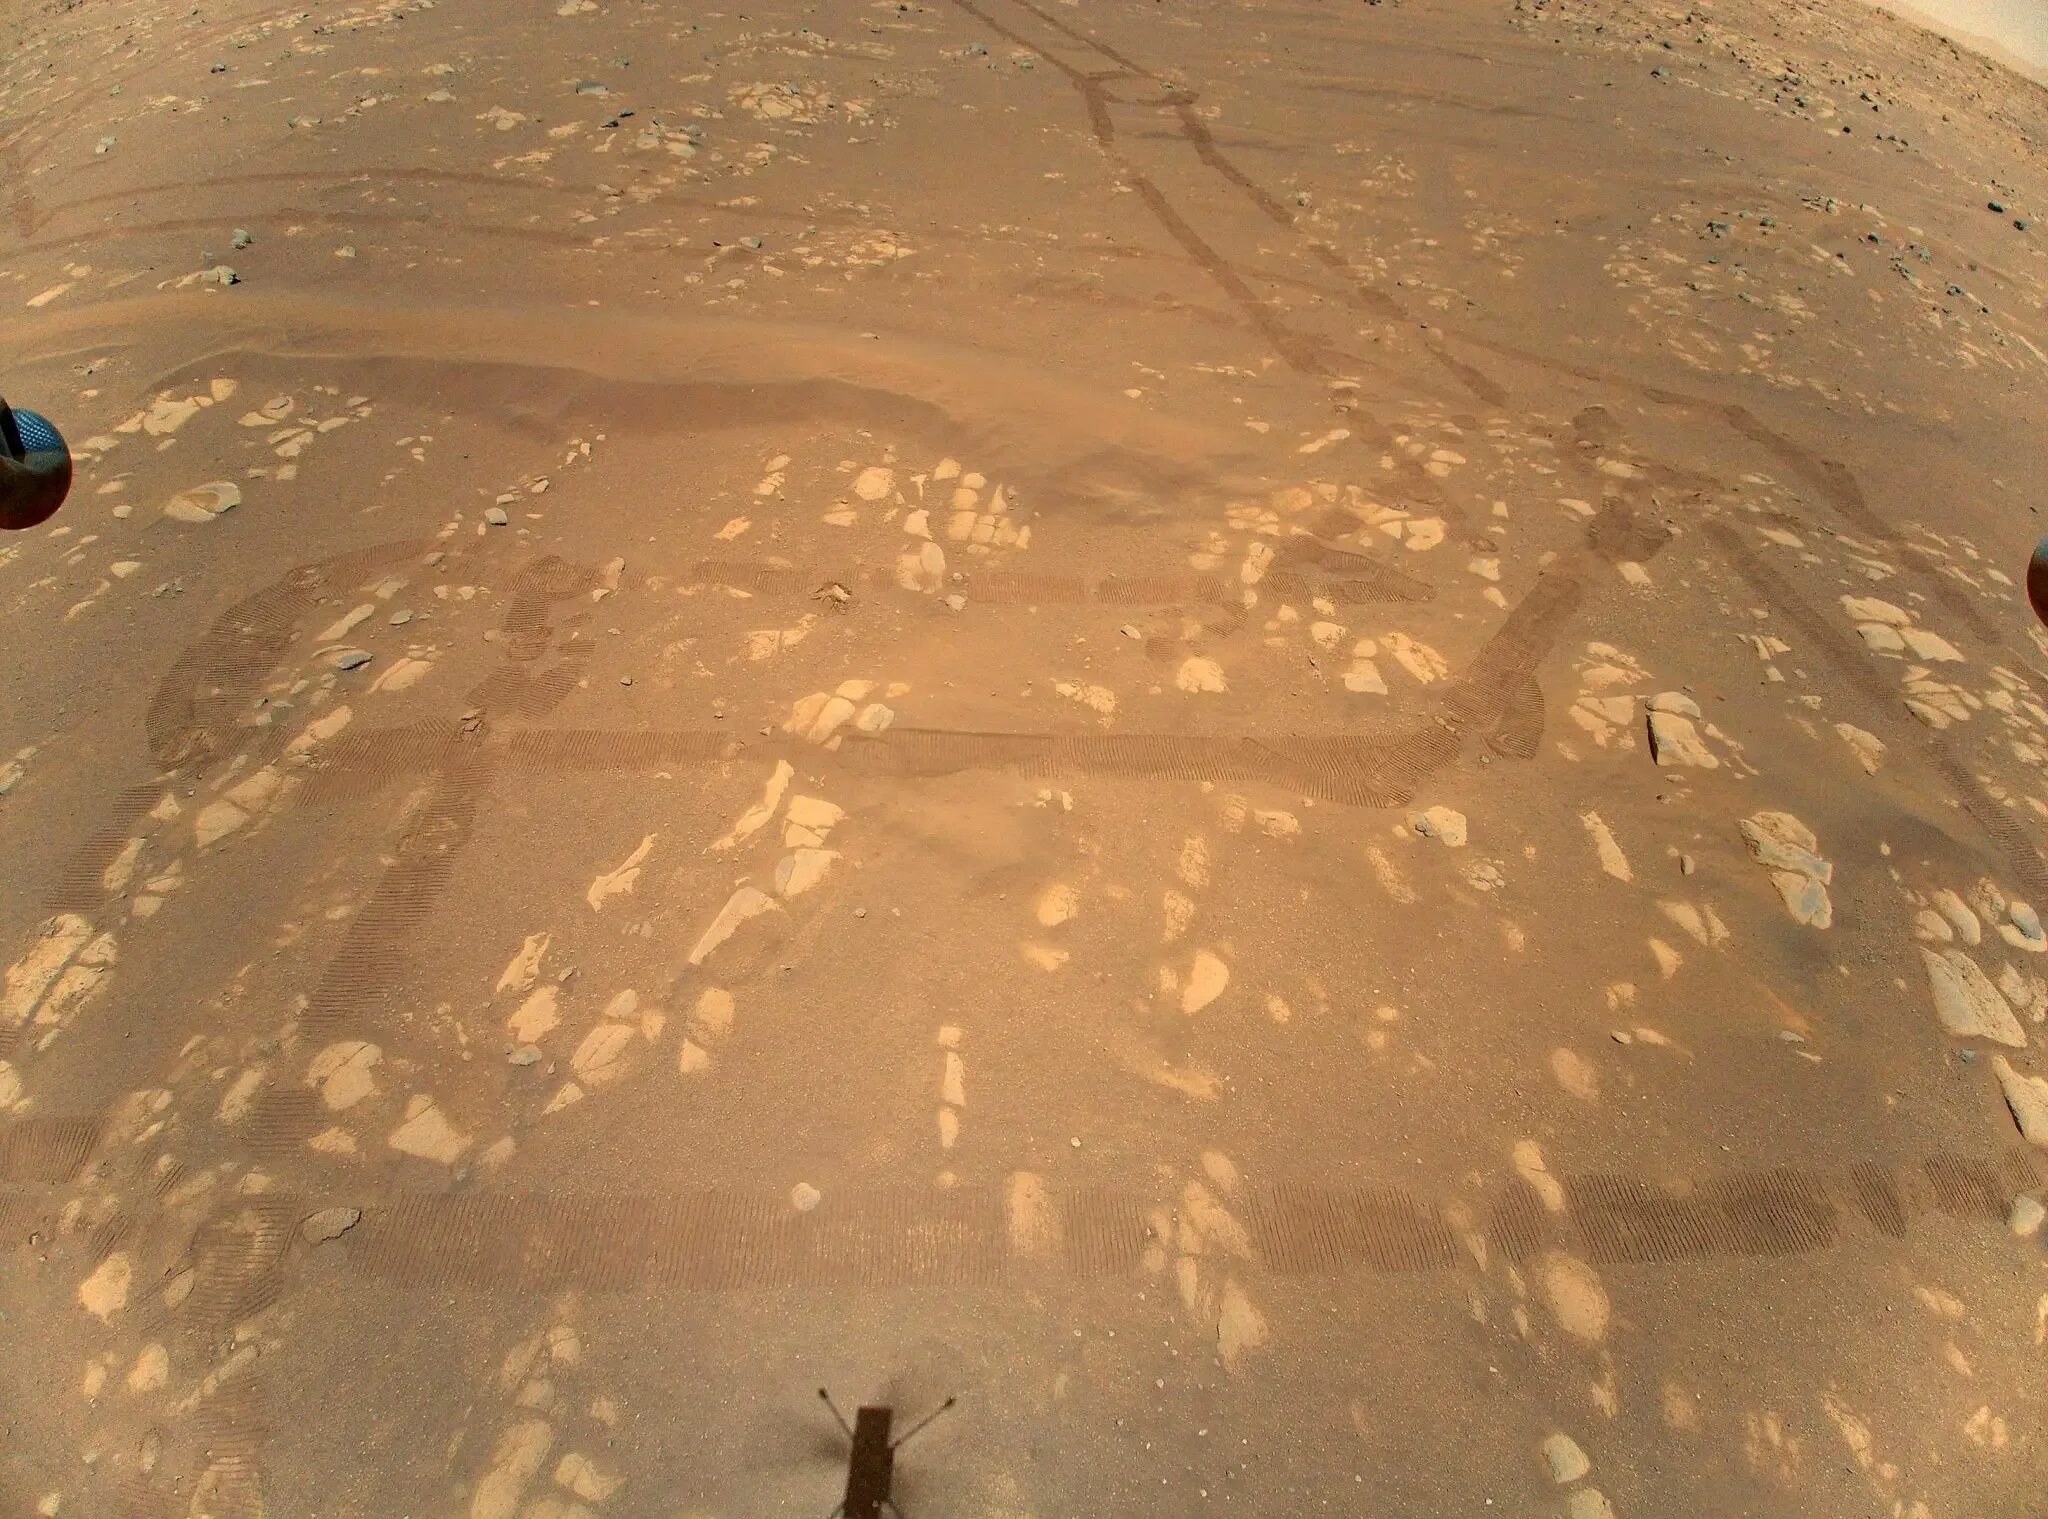 Марс 2021 НАСА. Снимки Марса с марсохода. Снимки Марса НАСА 2021. Снимки Марса с вертолета НАСА.